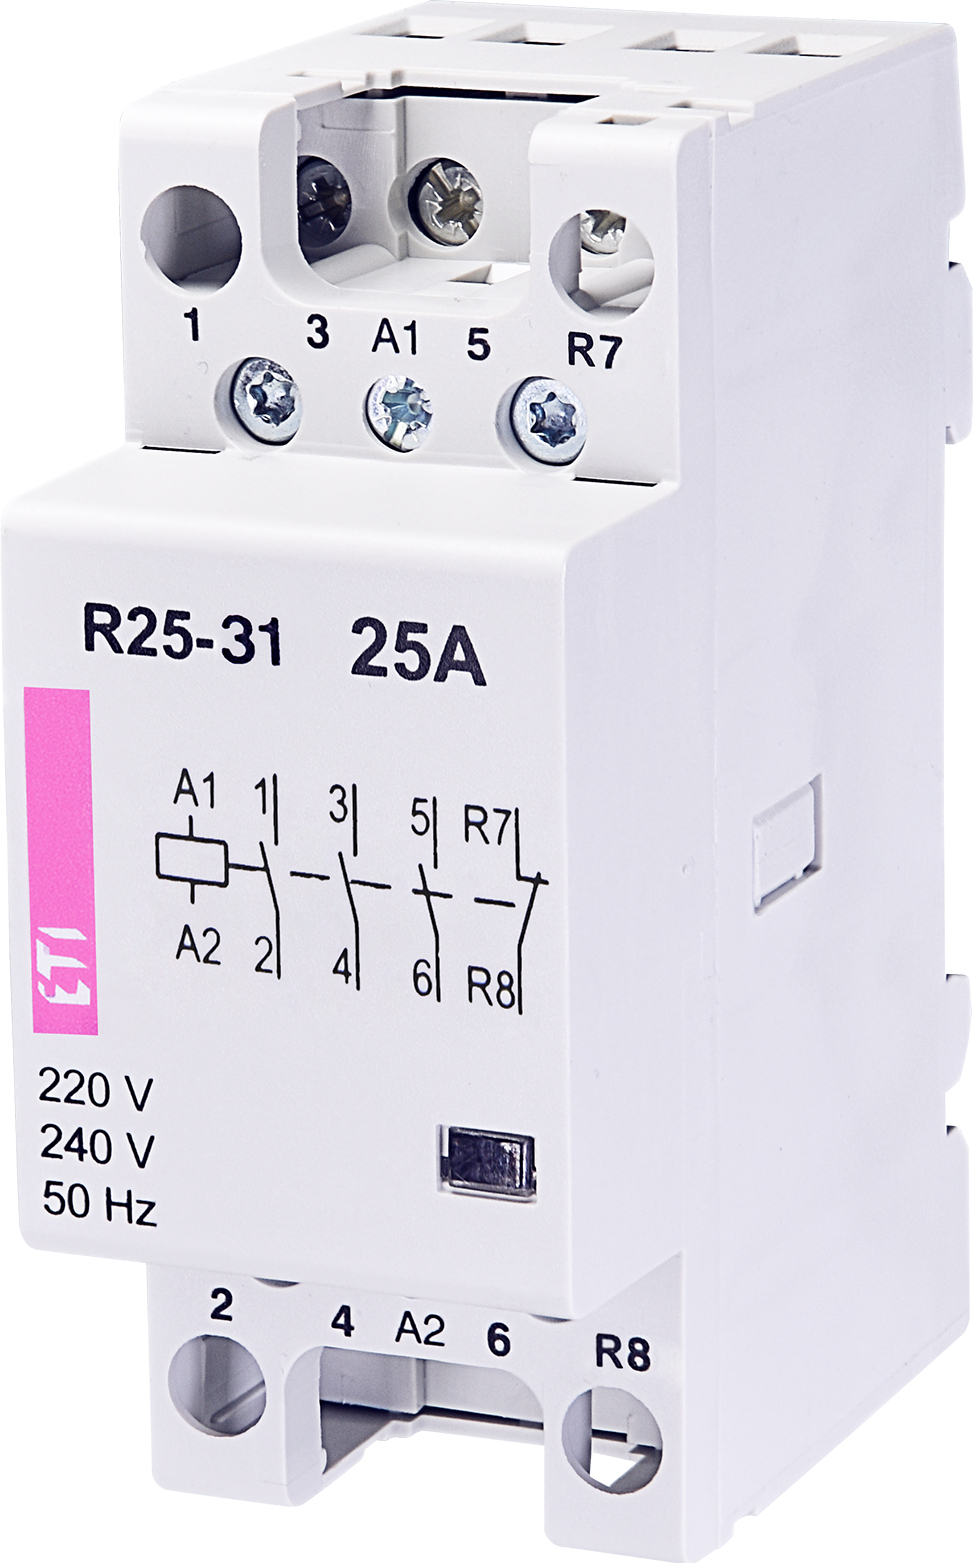 R 25-31 230V modular contactor